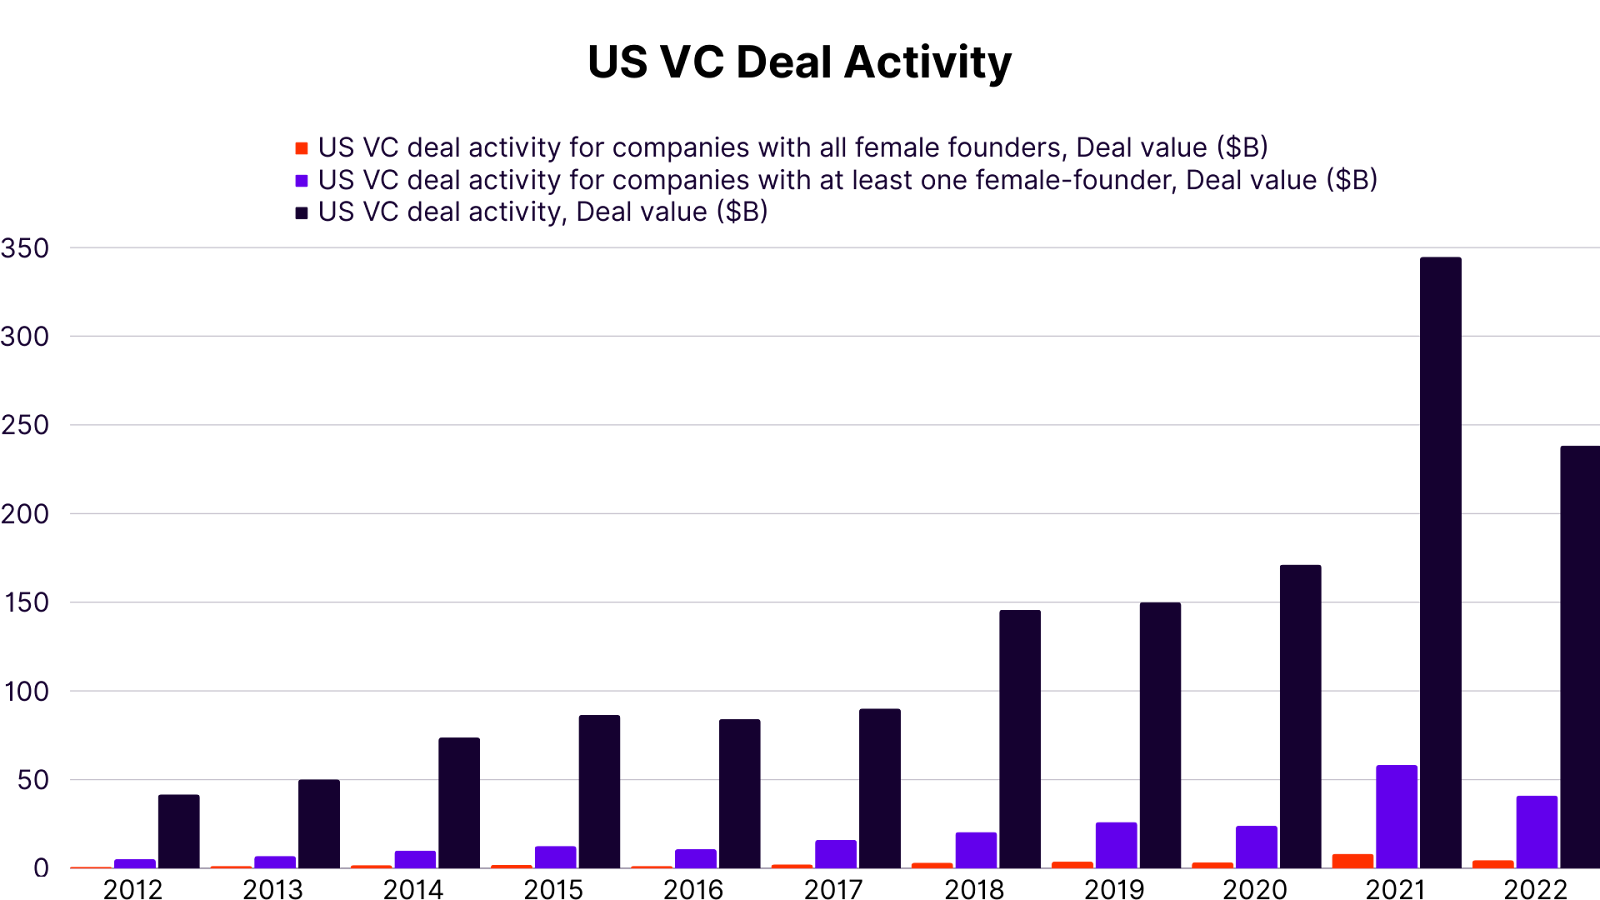 US VC Deal Activity: 2012-2022